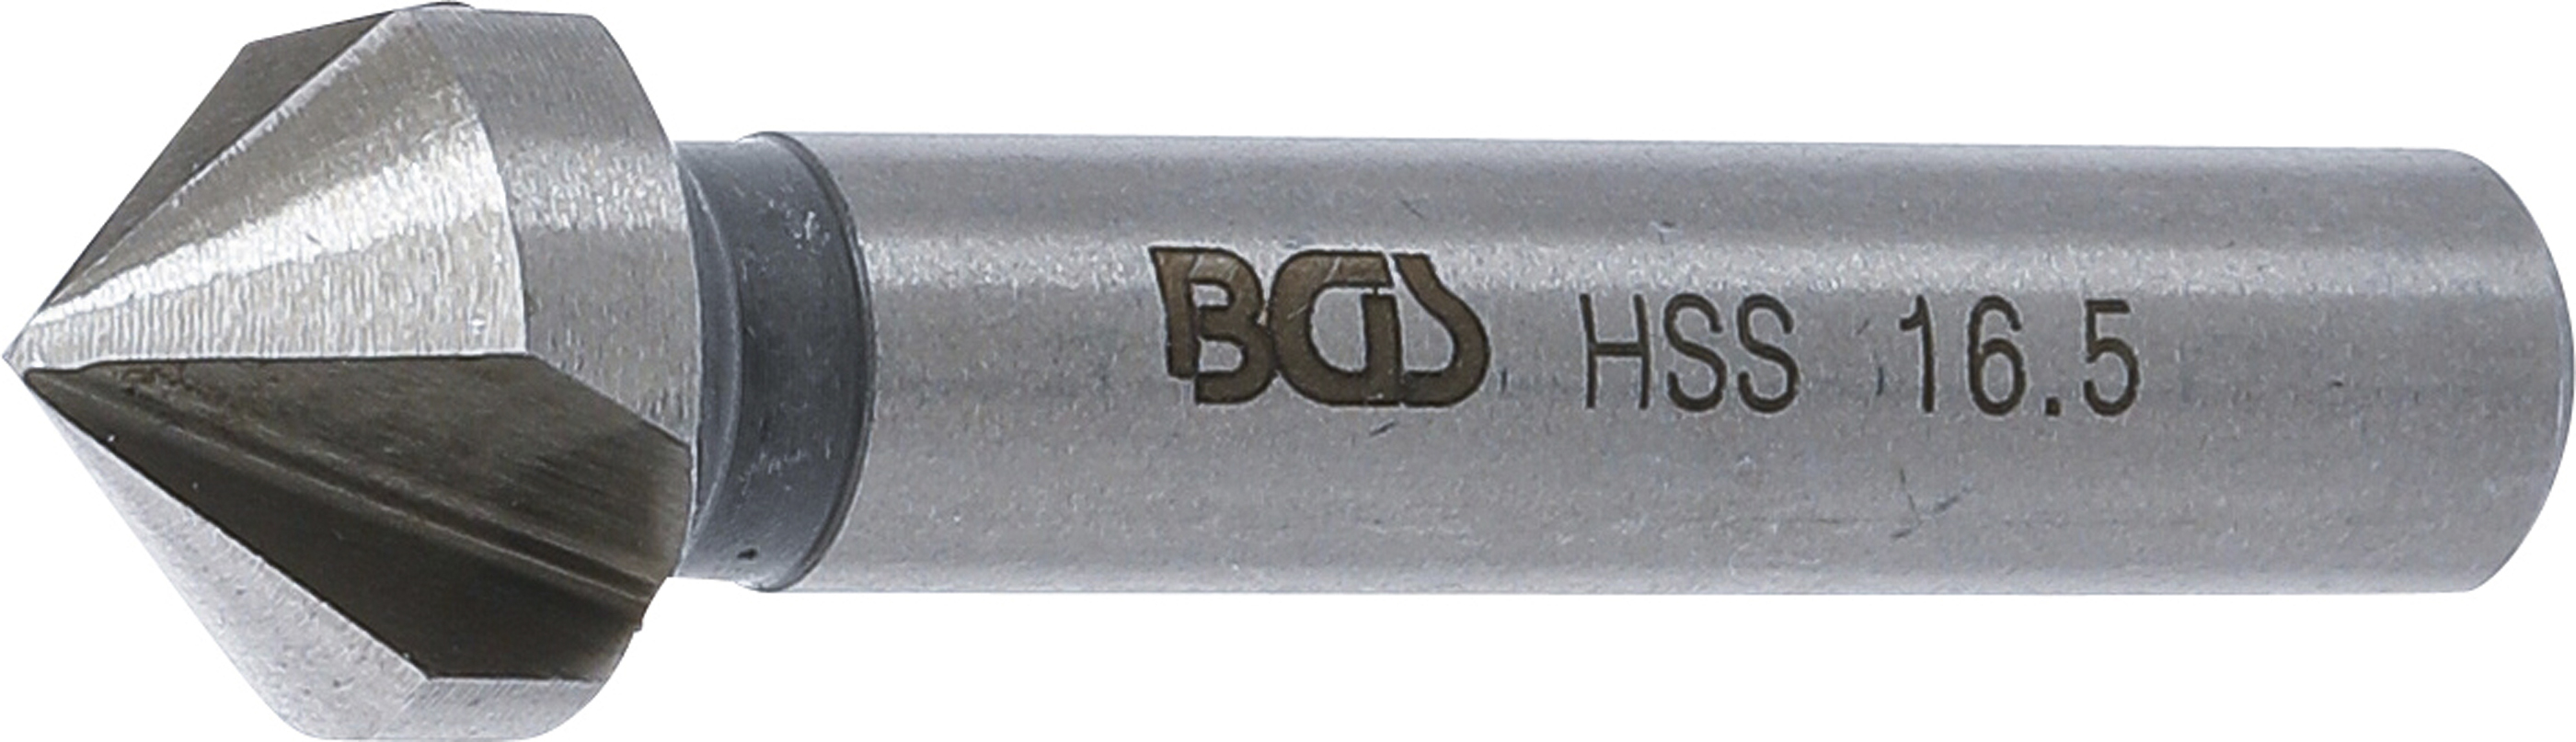 BGS 1997-5 Freza pentru zencuit HSS, DIN 335 Forma C,  Ø 16,5 mm